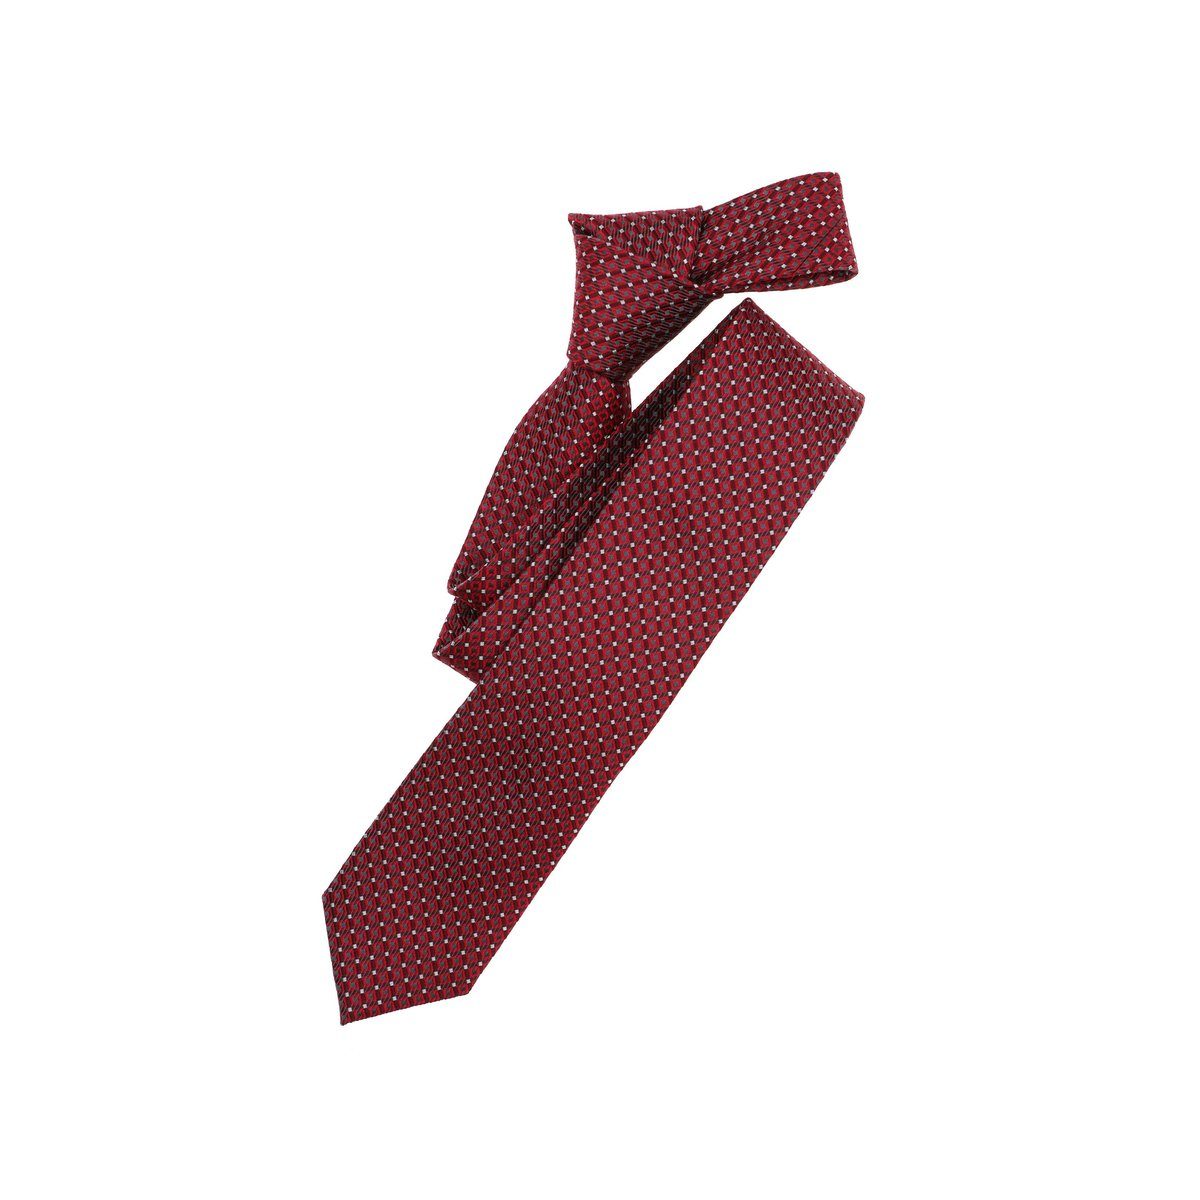 VENTI Krawatte rot (1-St) Mittelrot